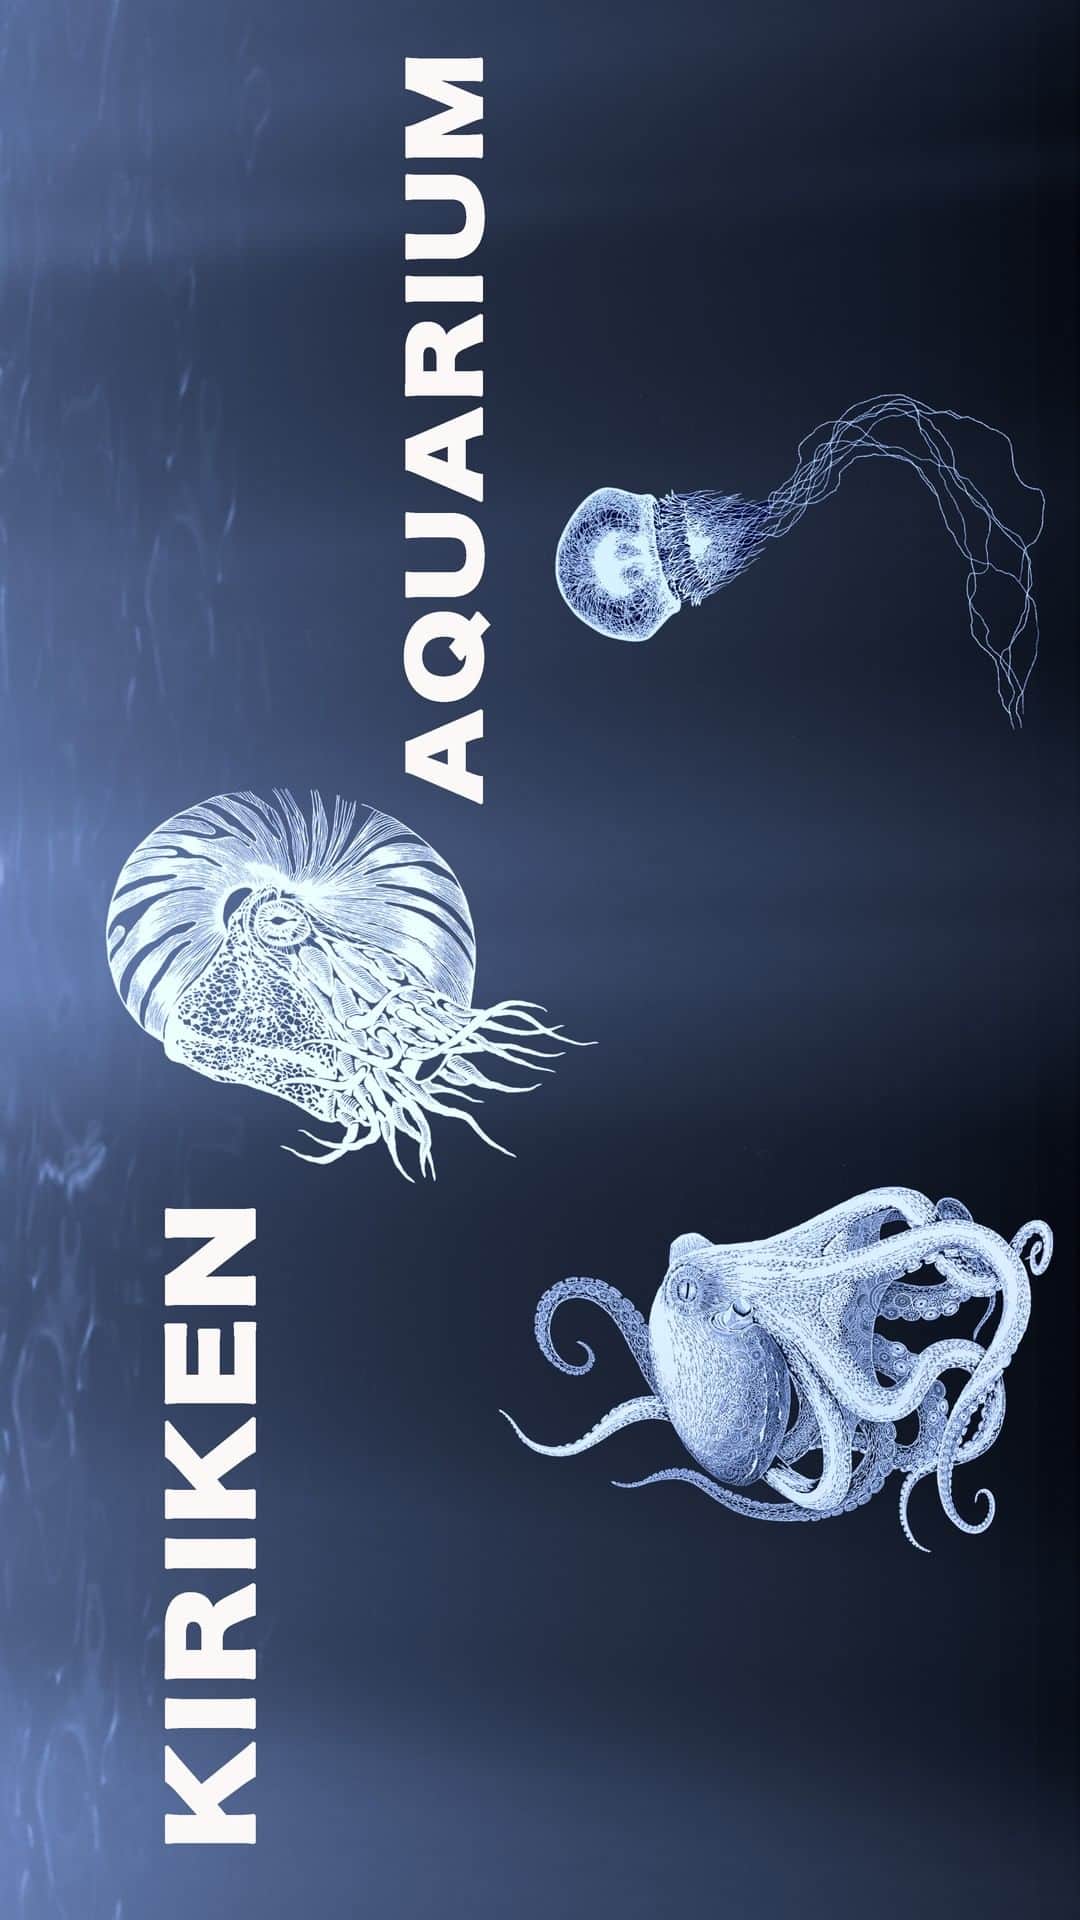 切り剣Masayoのインスタグラム：「切り剣こと切り絵創作家 福田 理代（Masayo）です。今回の動画は、水族館とういうテーマで、私の海洋勢物たちの切り絵を紹介いたします。最後まで見ていただけたら嬉しいです。／My name is Masayo Fukuda. I am Paper Cutting Artist Masayo!　In this movie, I will introduce the cuttings of my ocean creatures in the theme of aquarium. 　I would be happy if you could see it to the end.  BLOG 切り剣こと切り絵創作家Masayo https://www.kirie-masayo.com  切り剣こと 切り絵創作家 福田 理代（Masayo）の再生リスト https://www.youtube.com/playlist?list=PL3OcNGd1o8fe9mLNz2yzDU2dg3_zDQEyj  Instagram https://www.instagram.com  Twitter https://twitter.com/kiriken16」